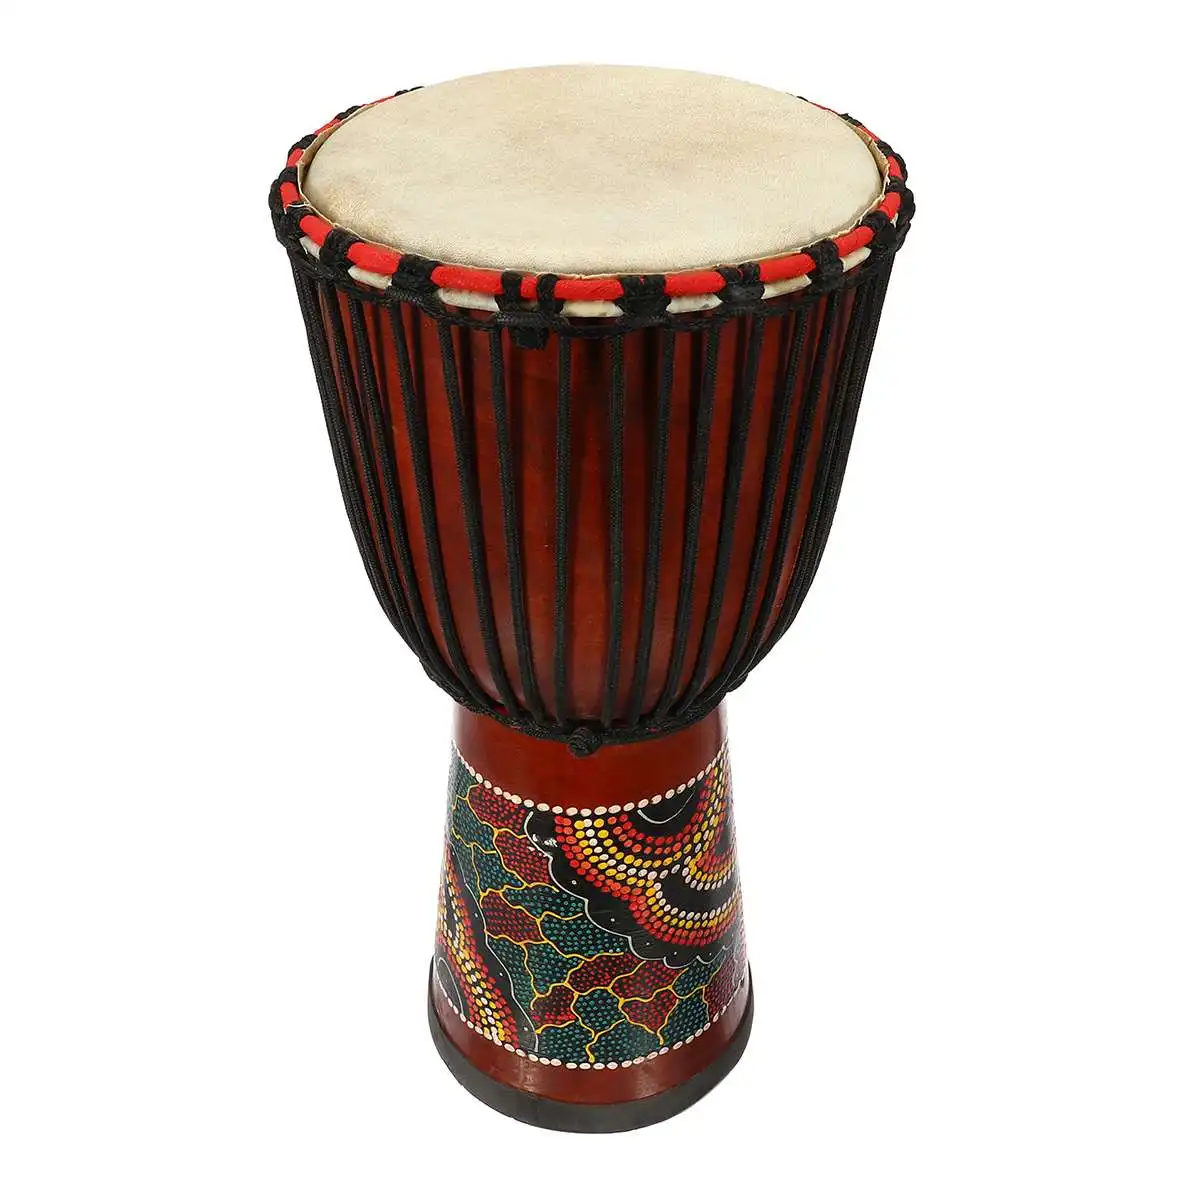 10 дюймов Африканский ручной деревянный барабан Djembe красное дерево тело козья овчина музыкальный инструмент Африканский барабан скульптура из дерева для детей игрушки - Цвет: Colored-drawing